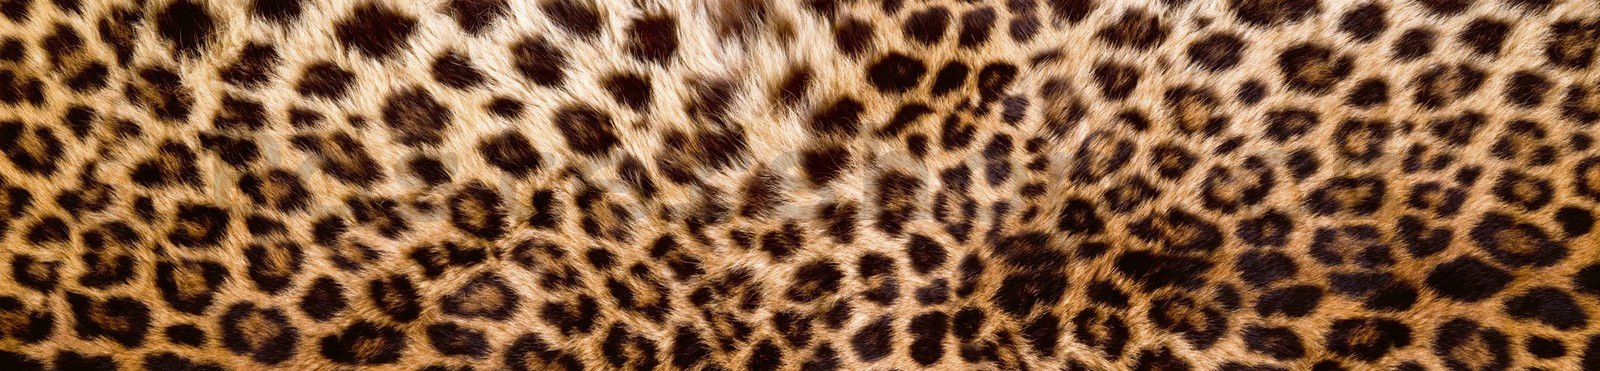 Samolepící omyvatelná tapeta za kuchyňskou linku - Leopardí kůže, 260x60 cm